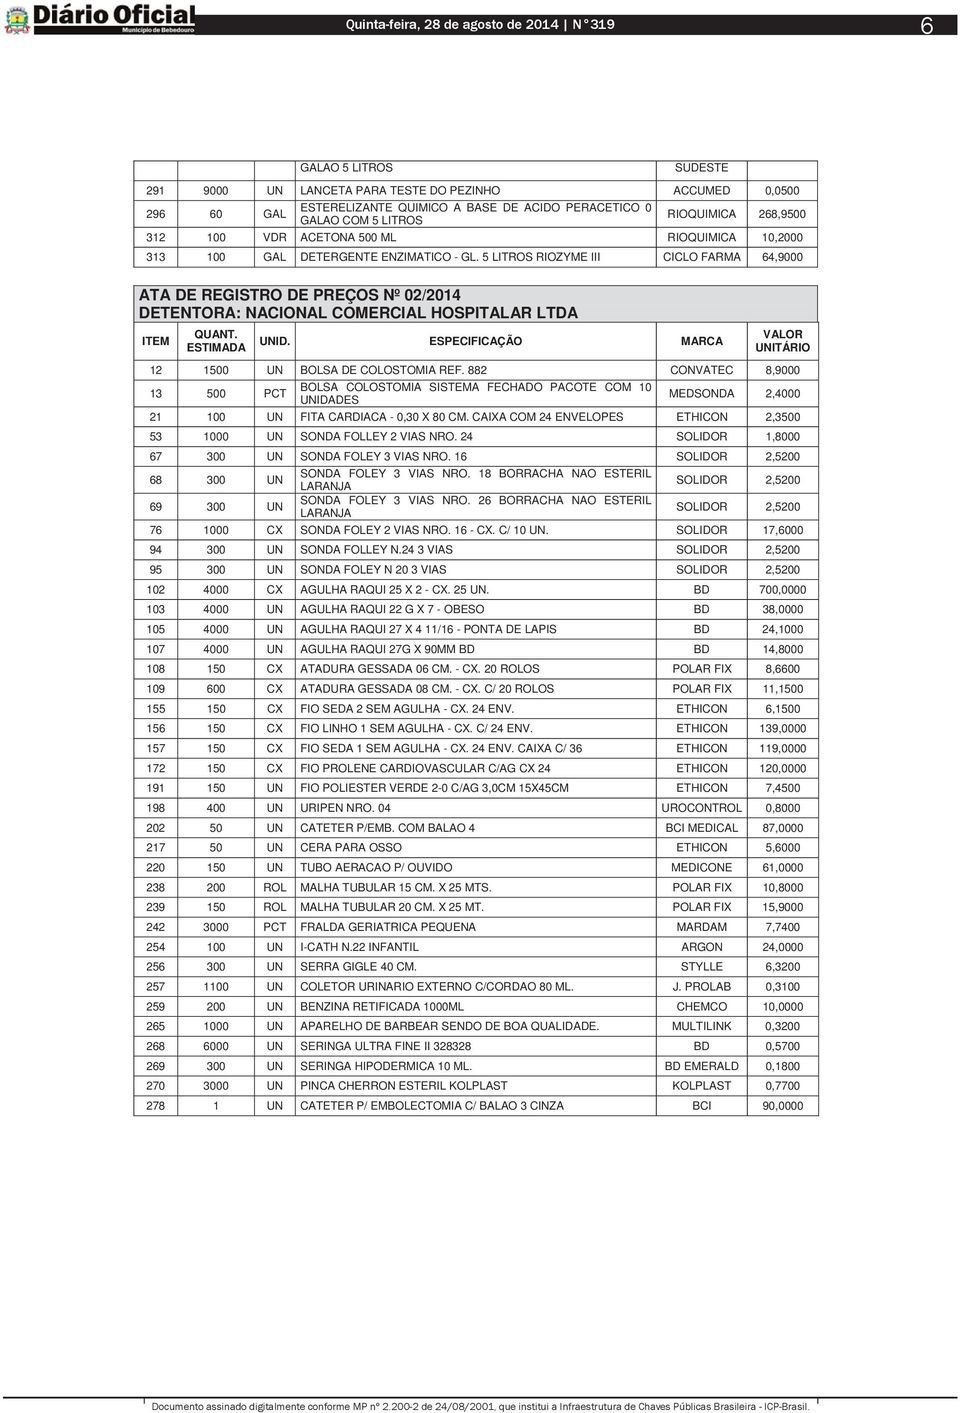 5 LITROS RIOZYME III CICLO FARMA 64,9000 ATA DE REGISTRO DE PREÇOS Nº 02/2014 DETENTORA: NACIONAL COMERCIAL HOSPITALAR LTDA 12 1500 UN BOLSA DE COLOSTOMIA REF.